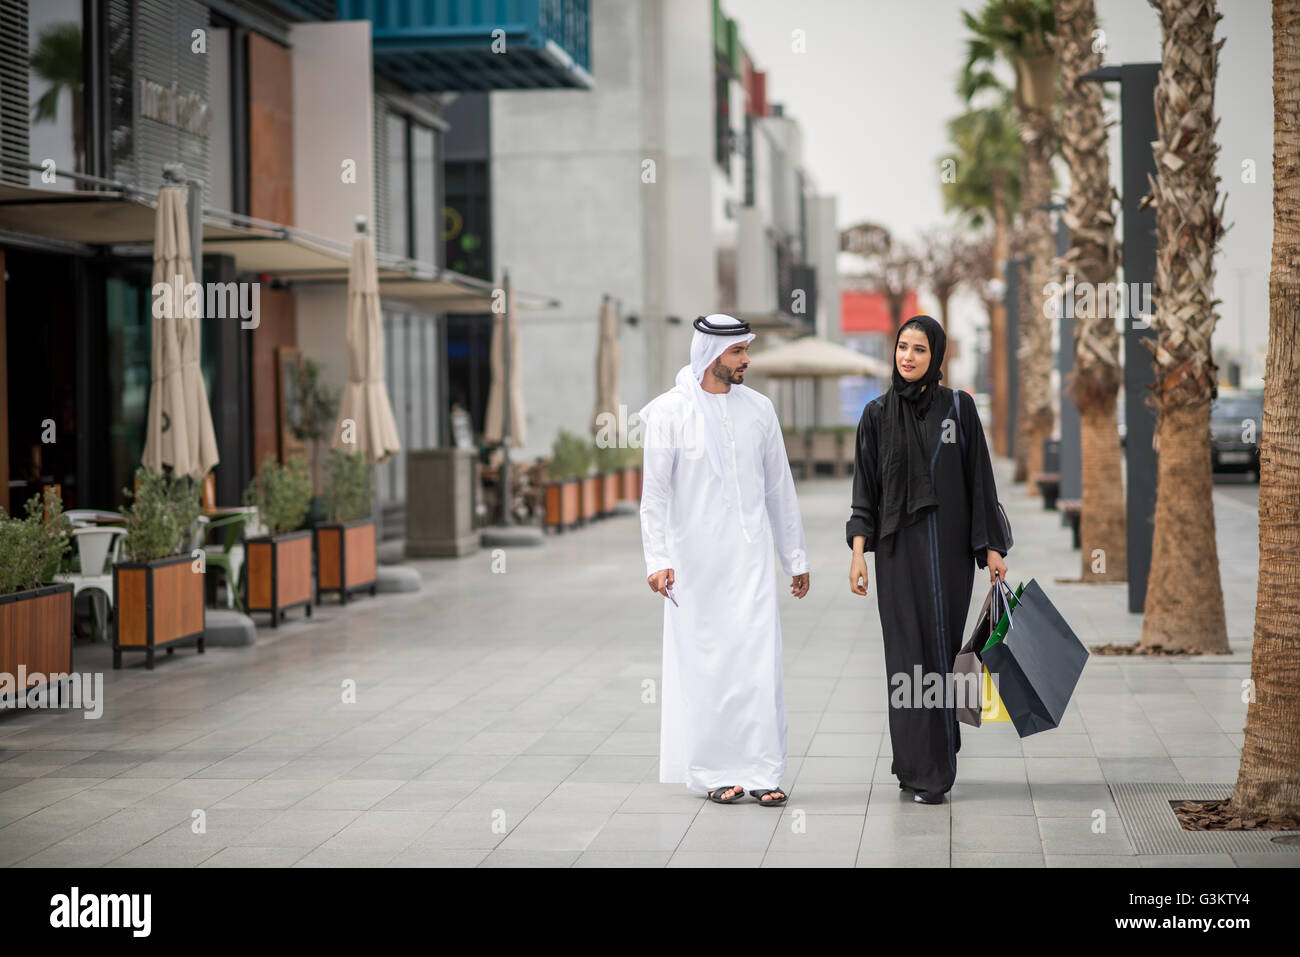 Nahen Ostens shopping paar tragen traditionelle Kleidung, Einkaufstaschen, Dubai, Vereinigte Arabische Emirate Stockfoto